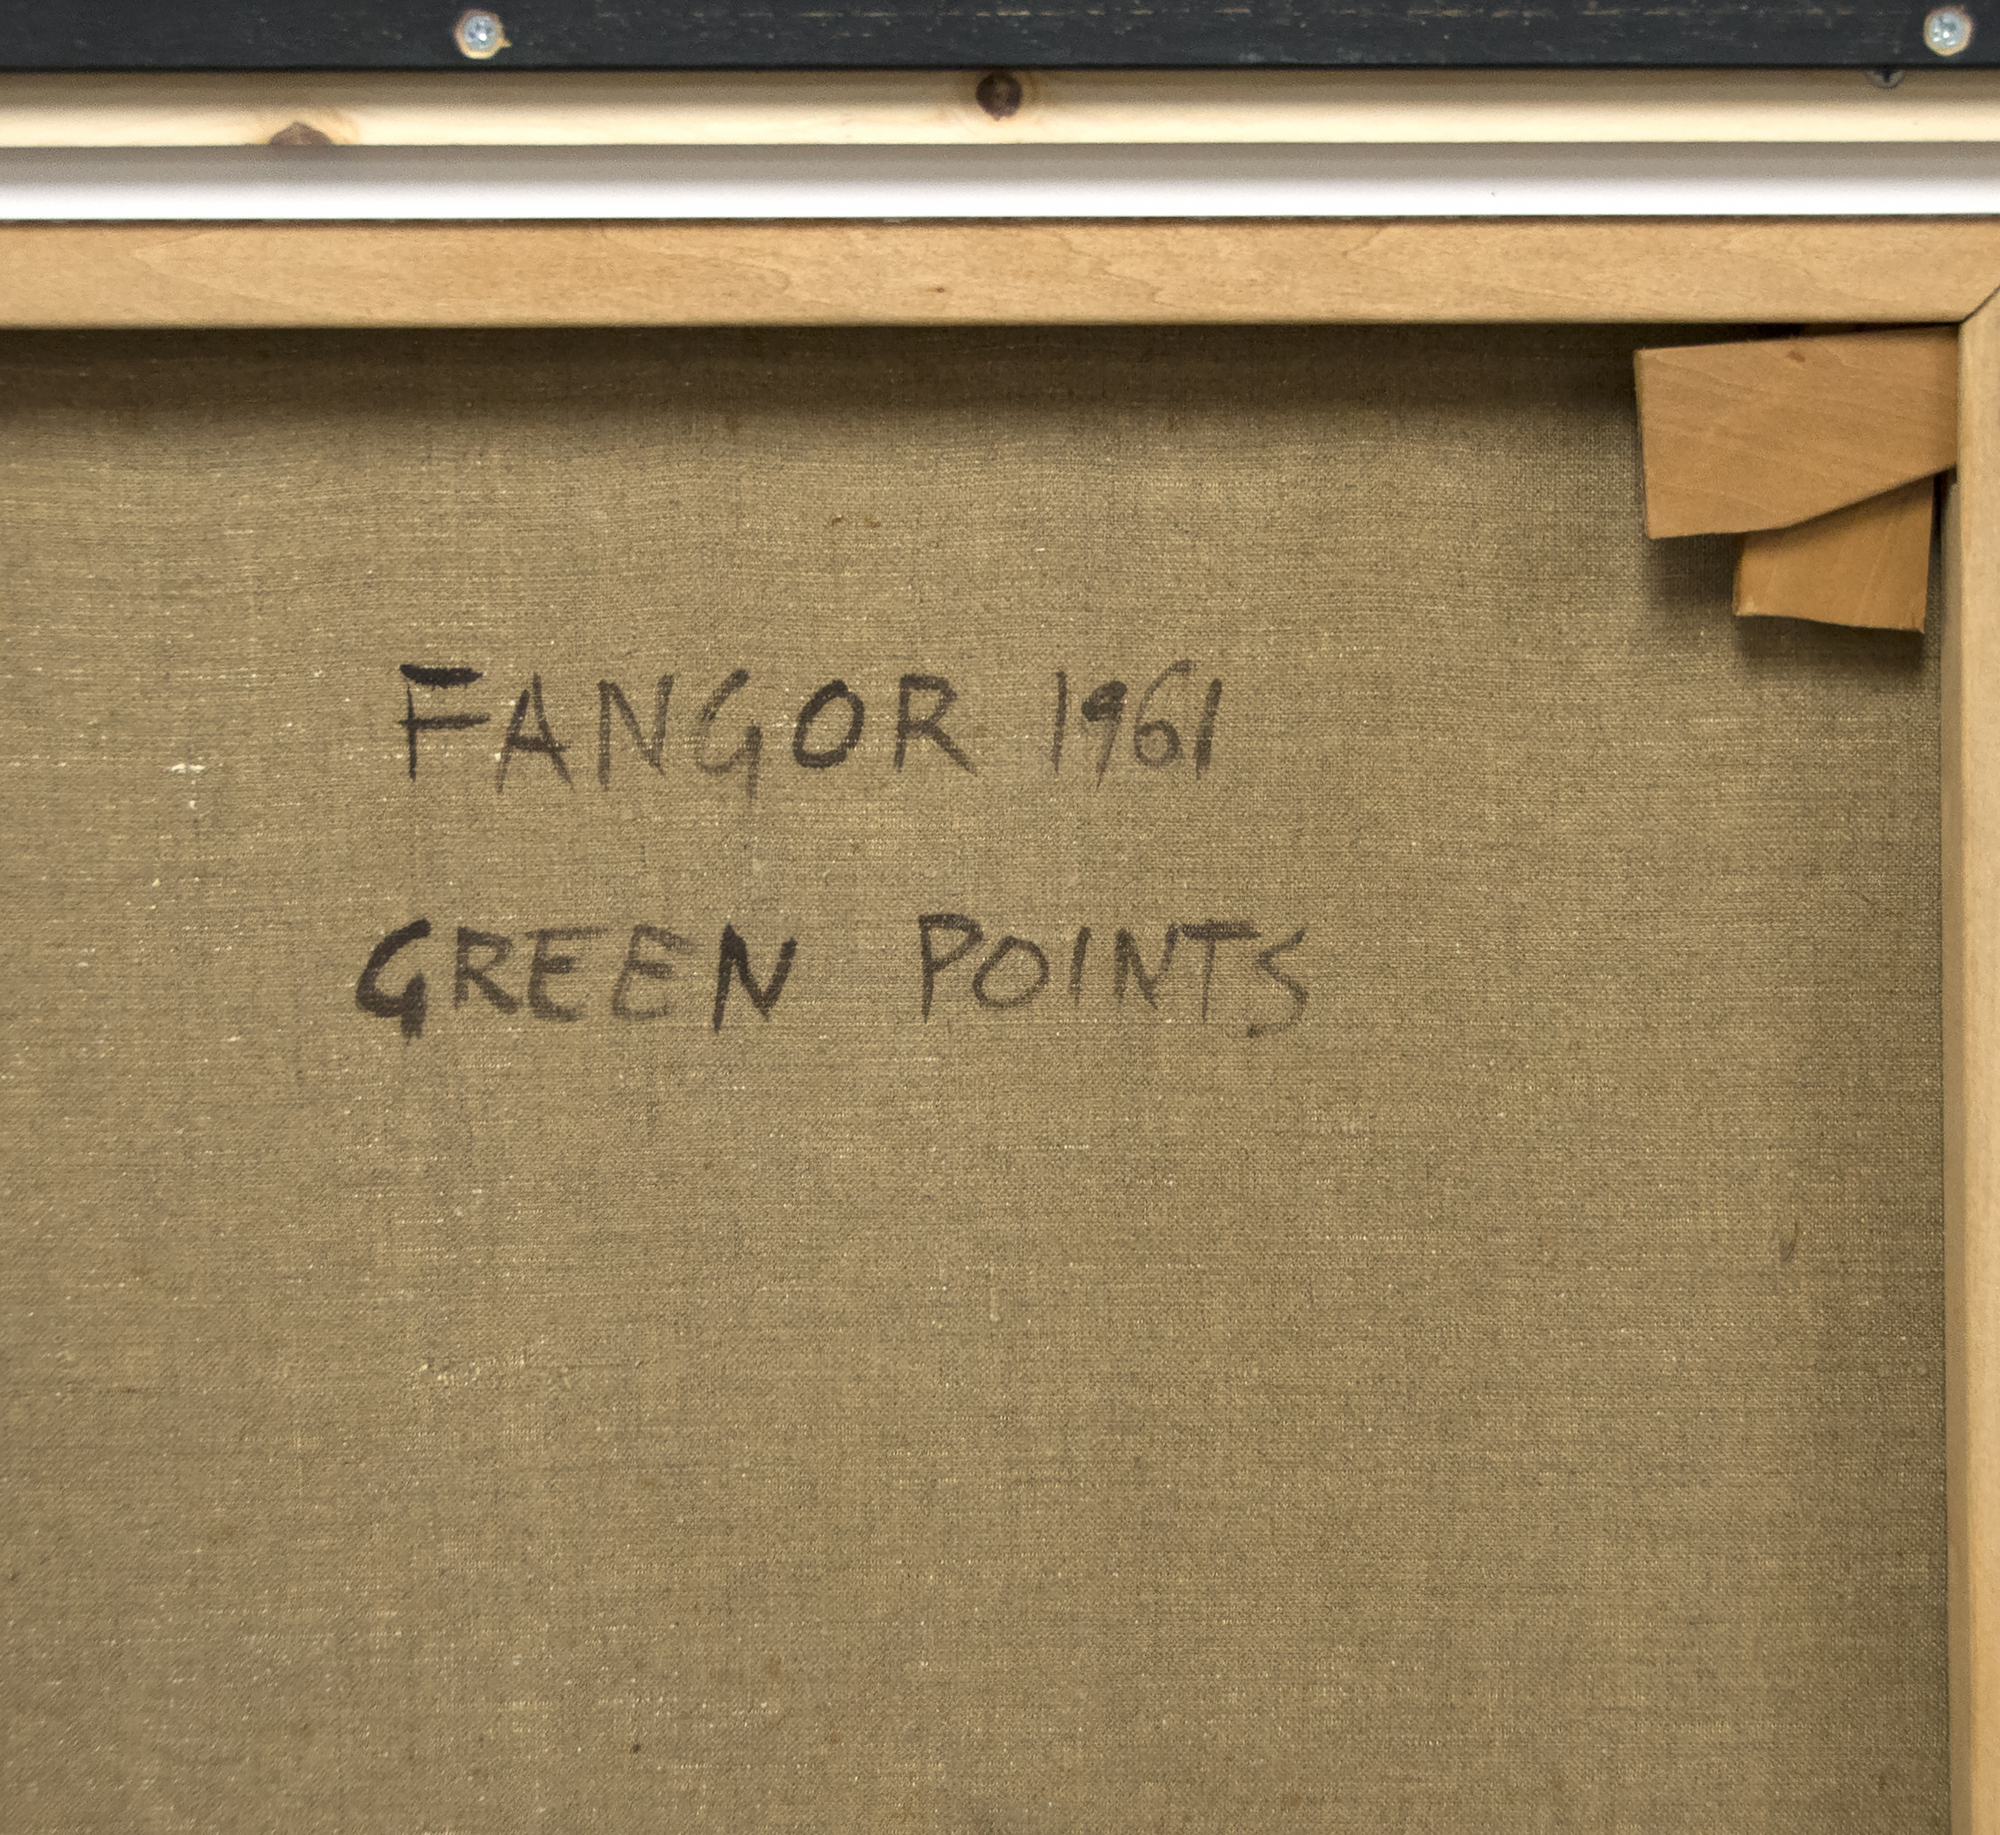 WOJCIECH FANGOR - נקודות ירוקות - שמן על בד - 52 7/8 x 33 1/2 אינץ'.